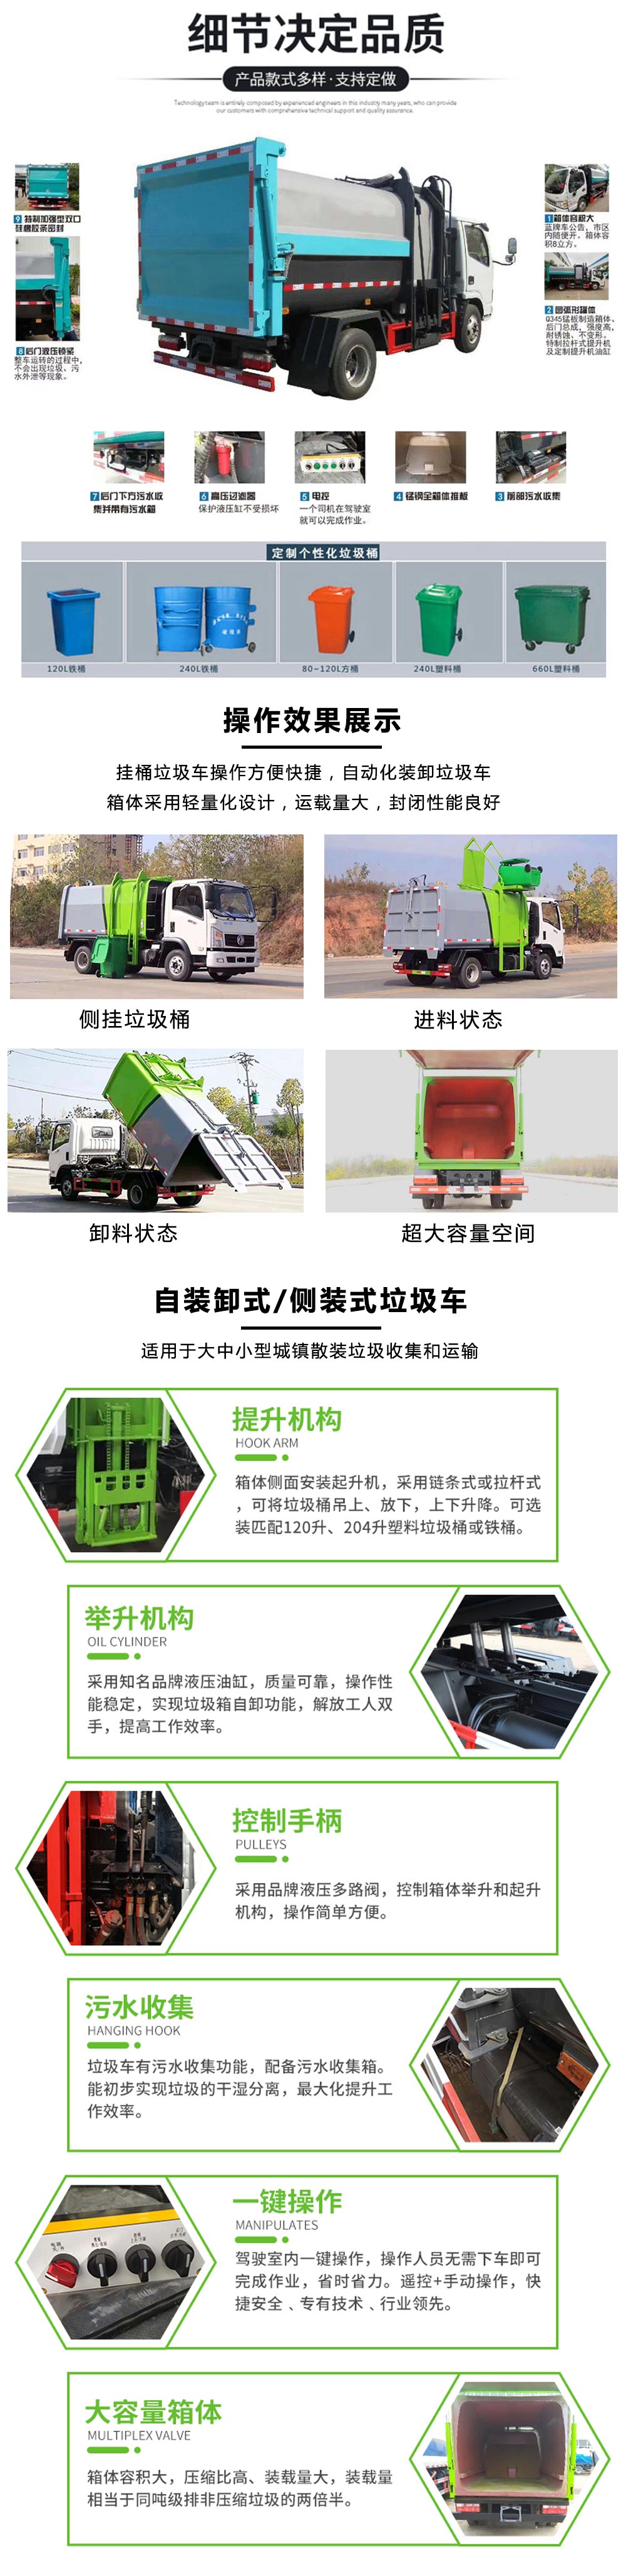 比亚迪T4纯电动自装卸垃圾车